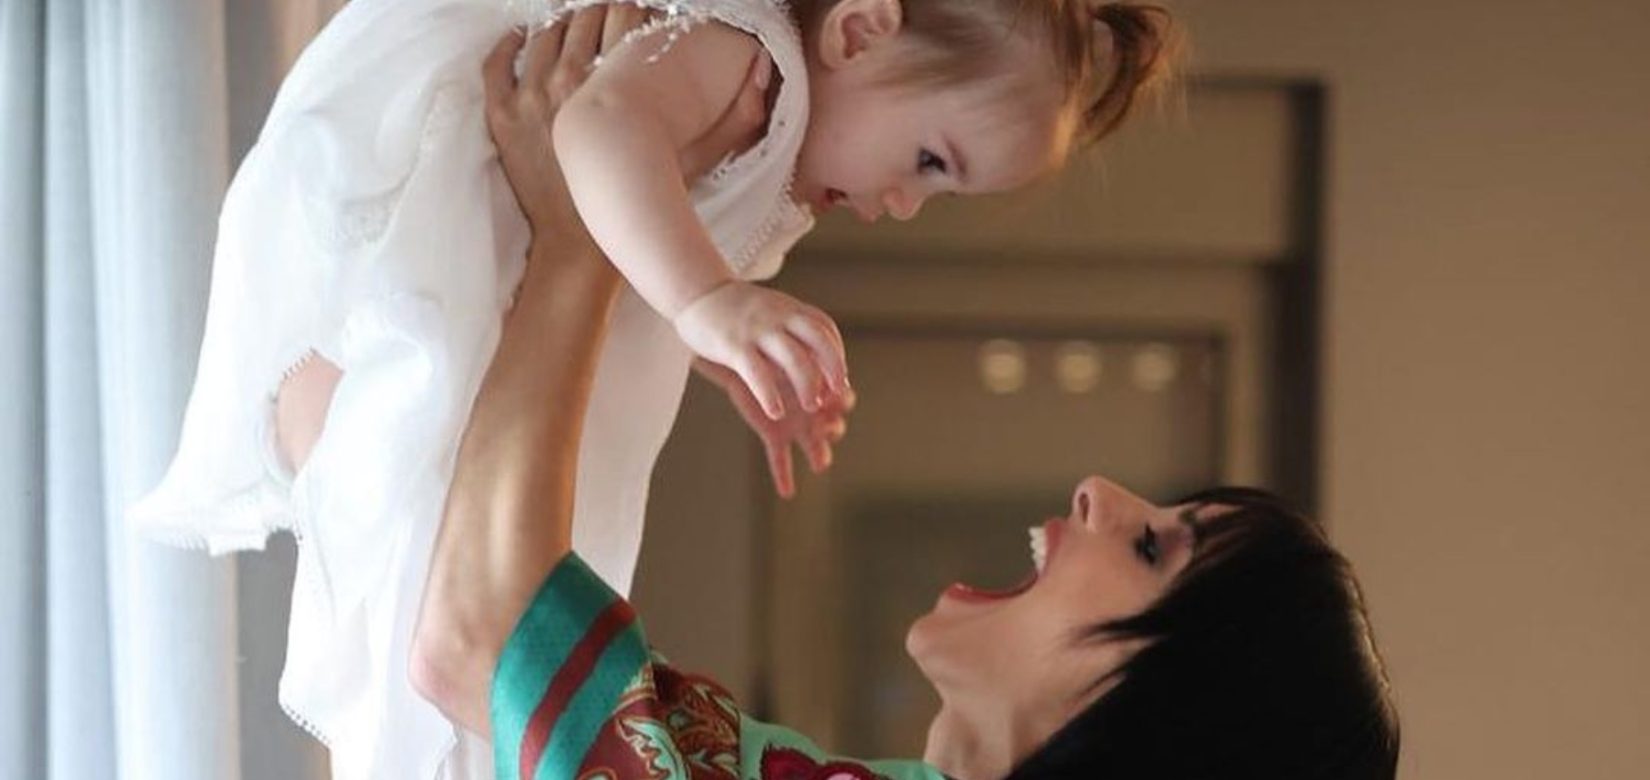 Άννα Μπεζάν:  Η φωτογραφία από την πρώτη αγκαλιά και το συγκινητικό μήνυμα για τα γενέθλια της κόρης της